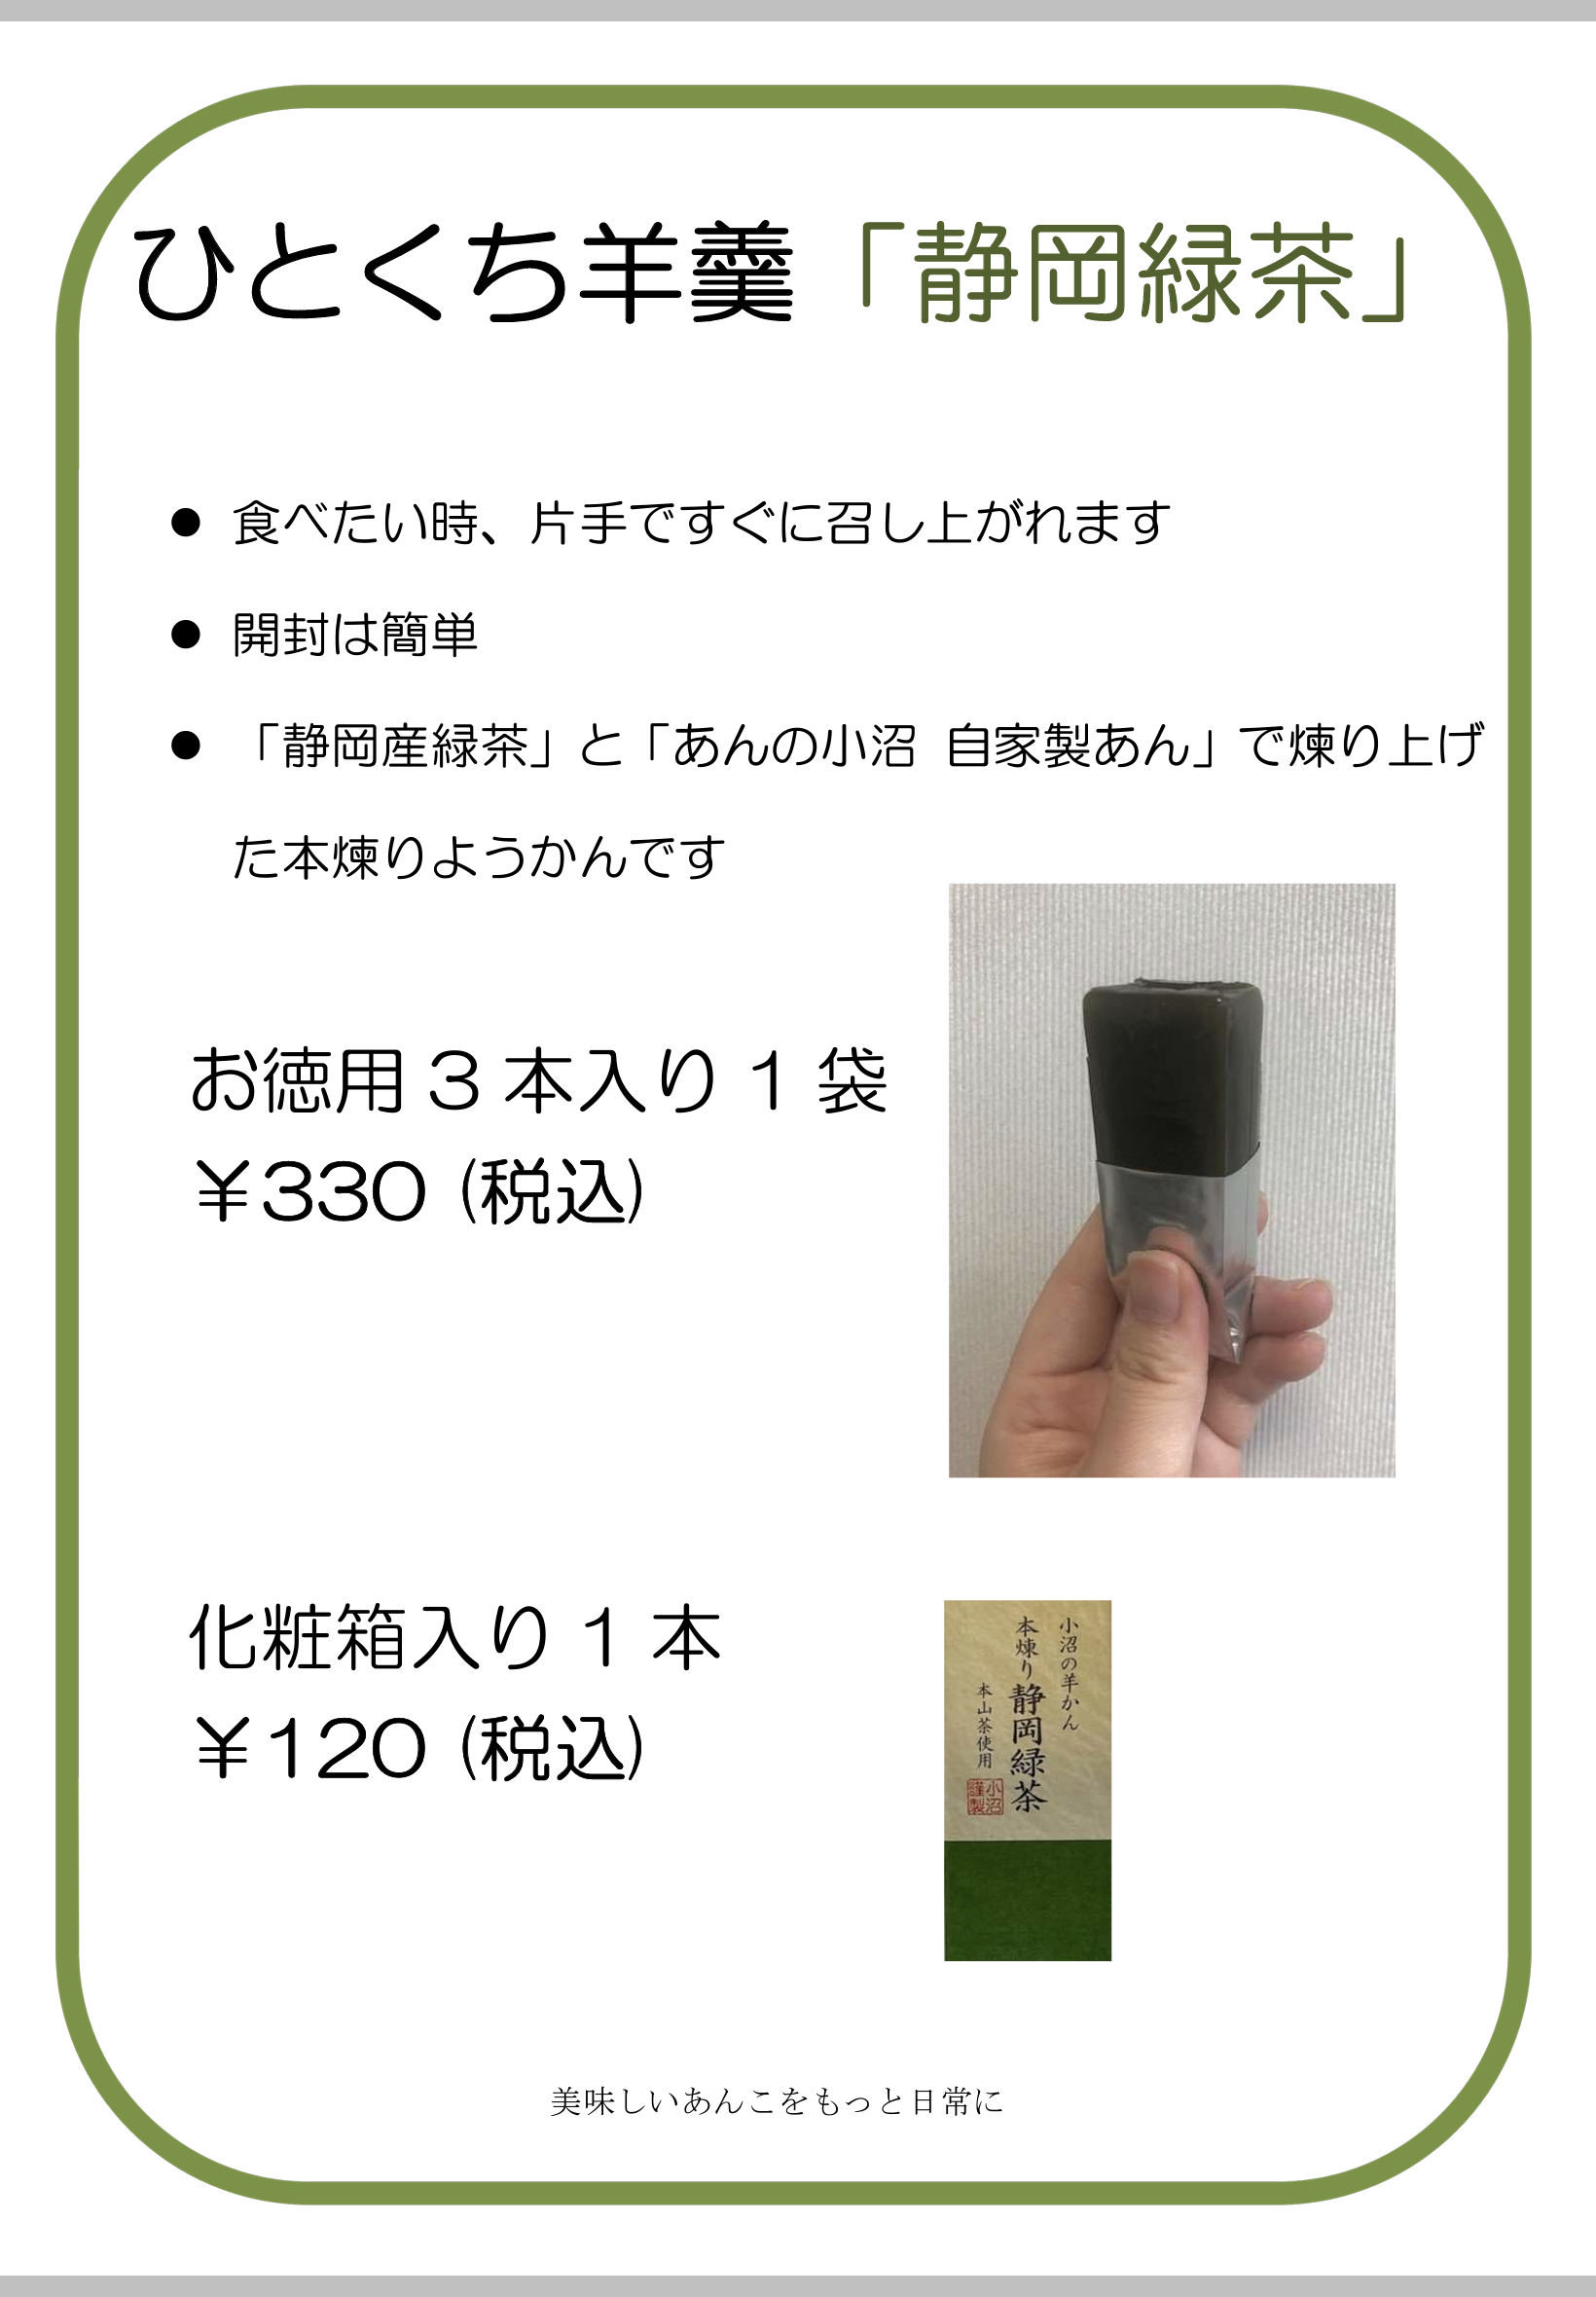 ひとくち羊羹「静岡緑茶」を9月15日から直売所にて販売開始します